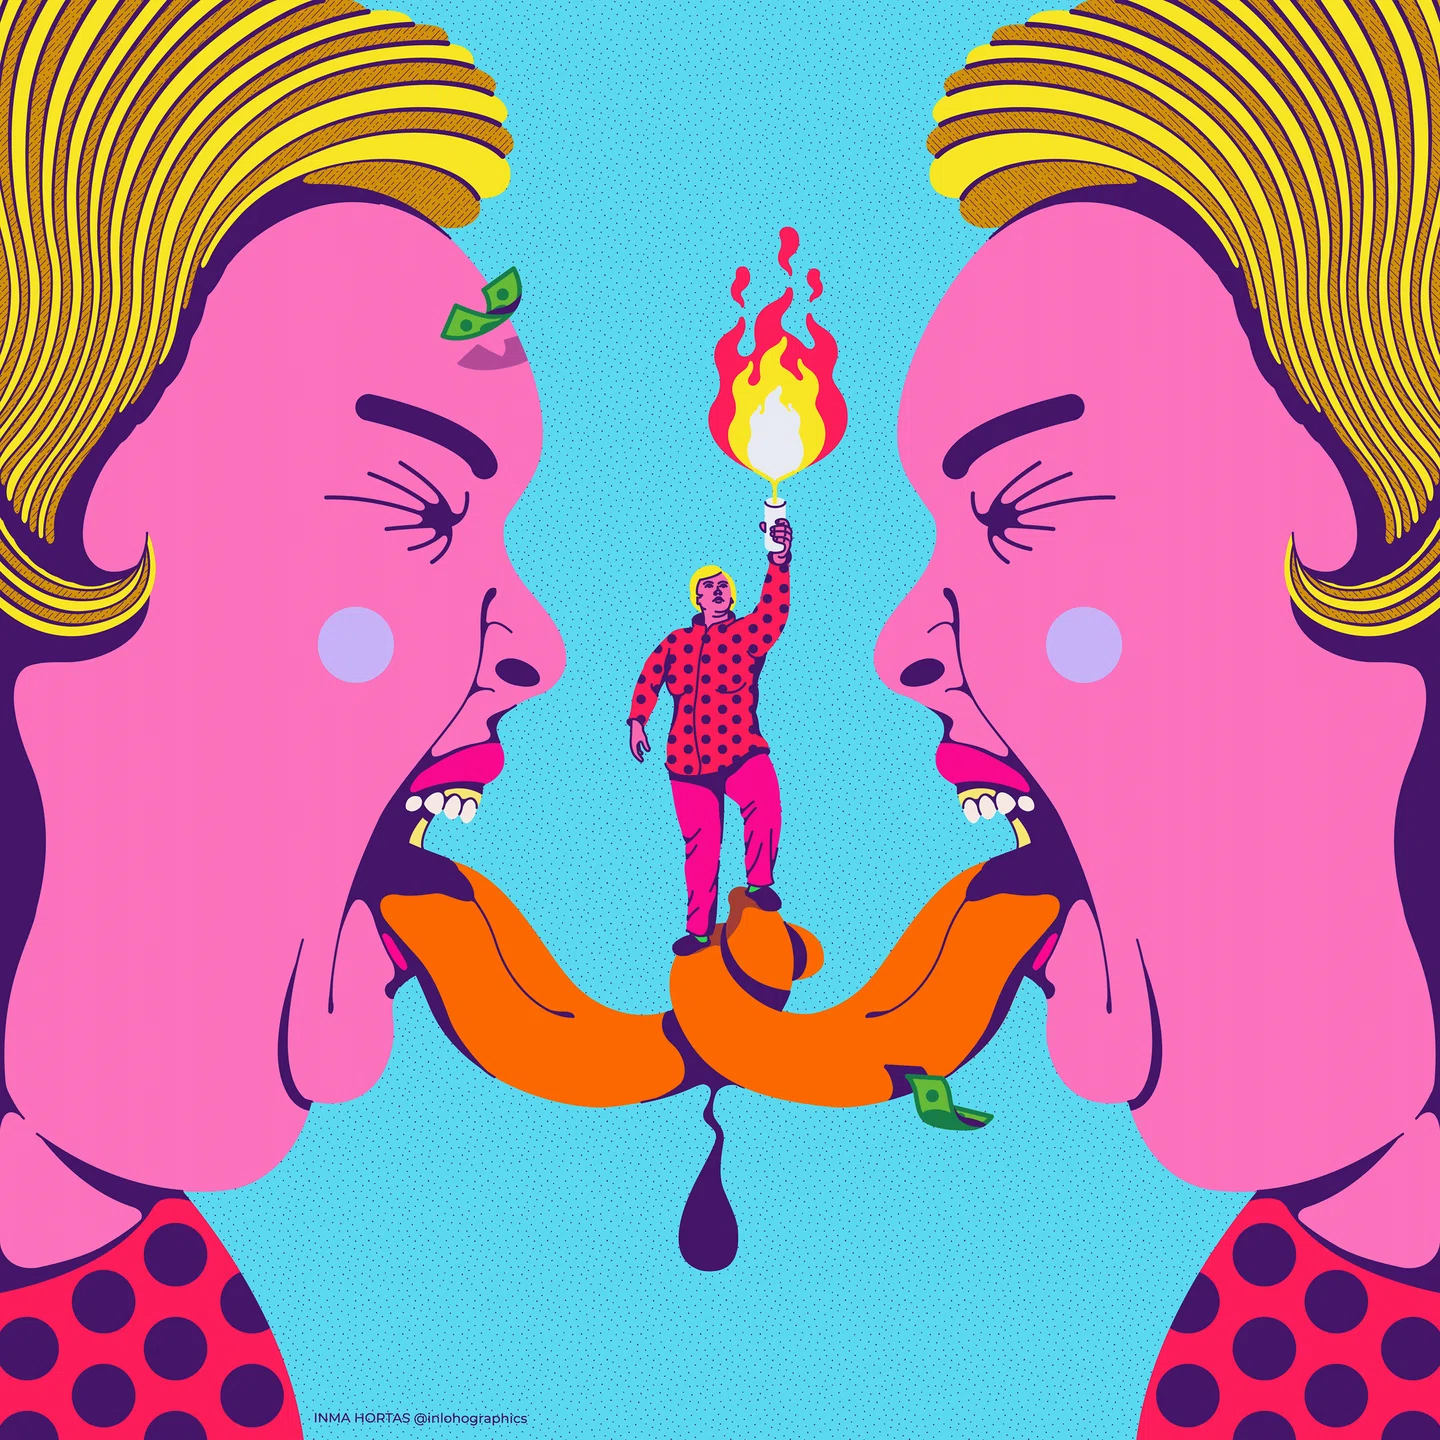 Inma Hortas ilustra o mundo colorido, maluco e diversificado ao seu redor